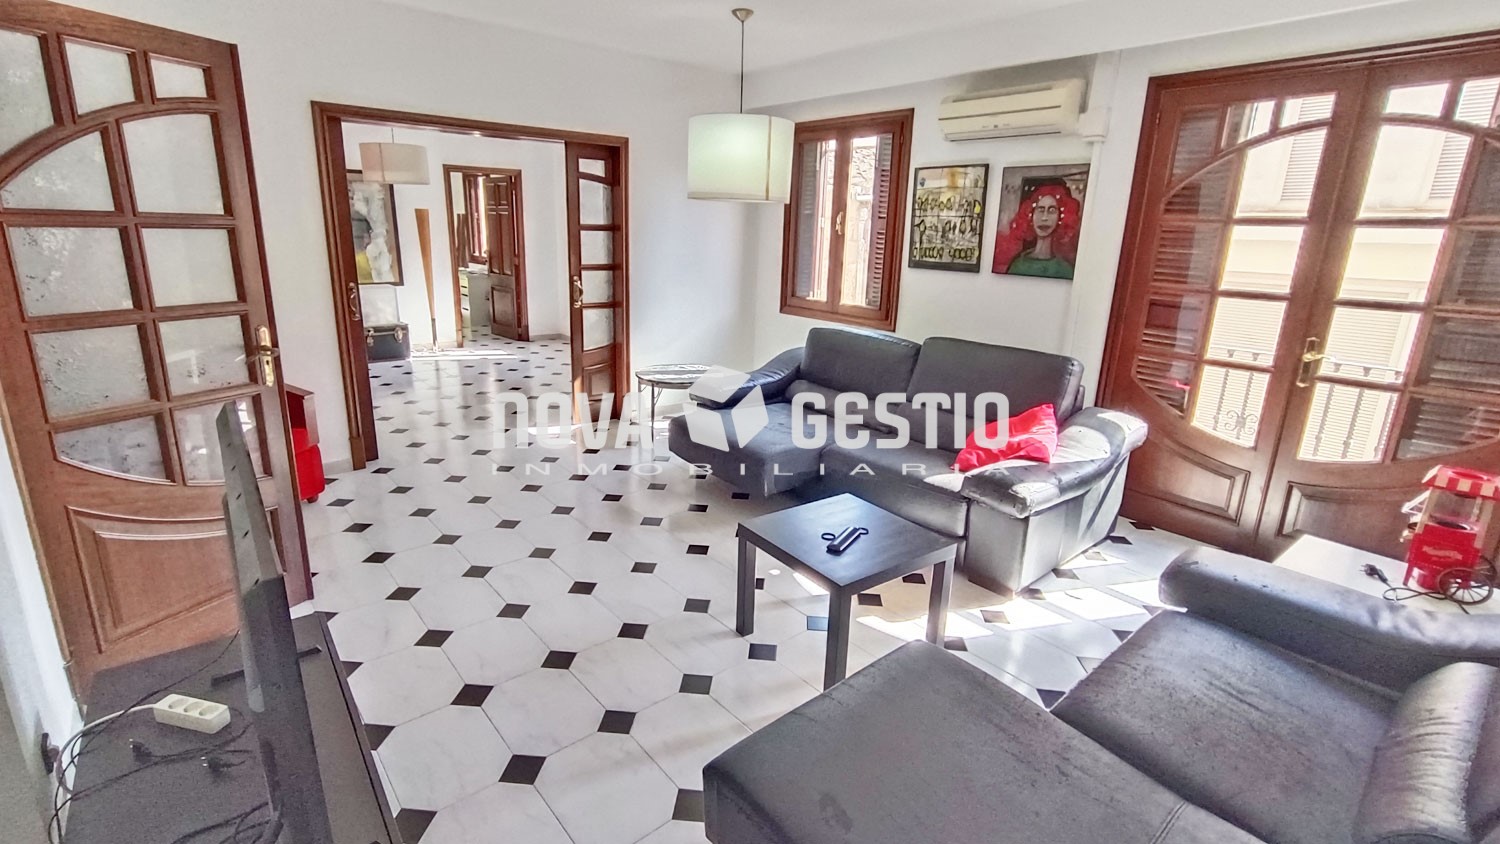 Casa en venta Manacor : : CA1241MA-VES